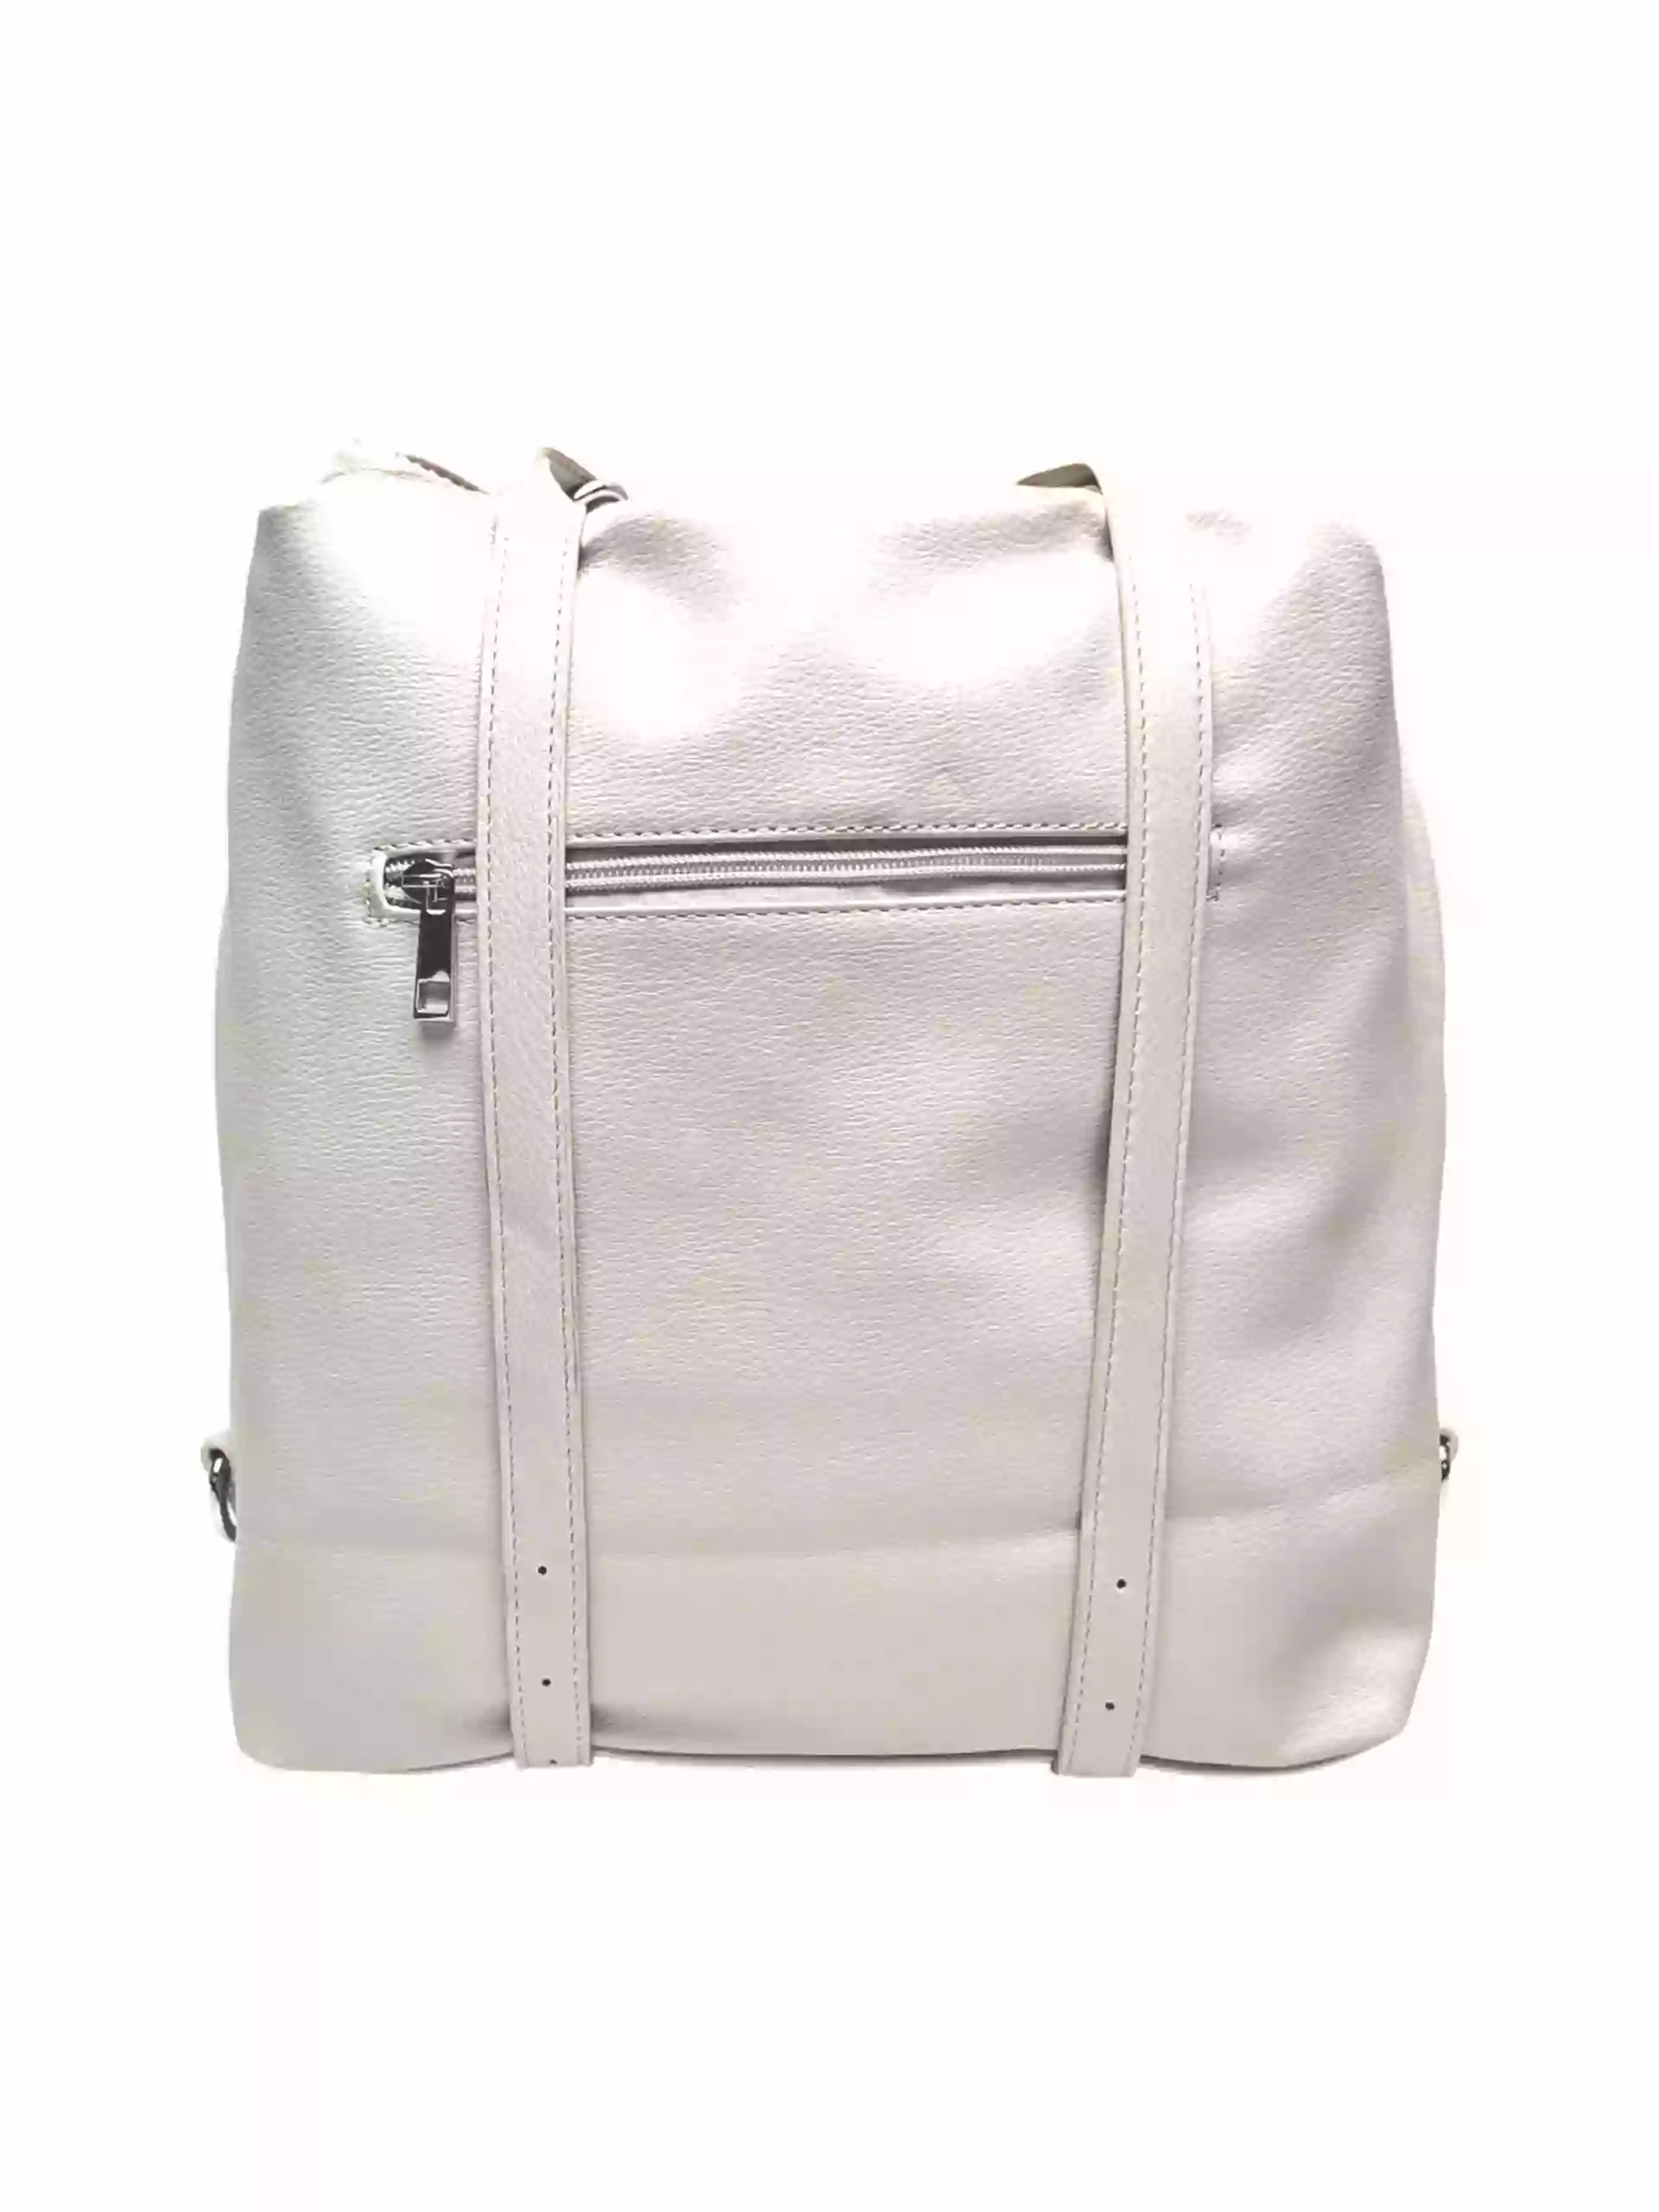 Velká perleťově bílá kabelka a batoh v jednom, Tapple, X368, zadní strana kabelko-batohu 2v1 s popruhy